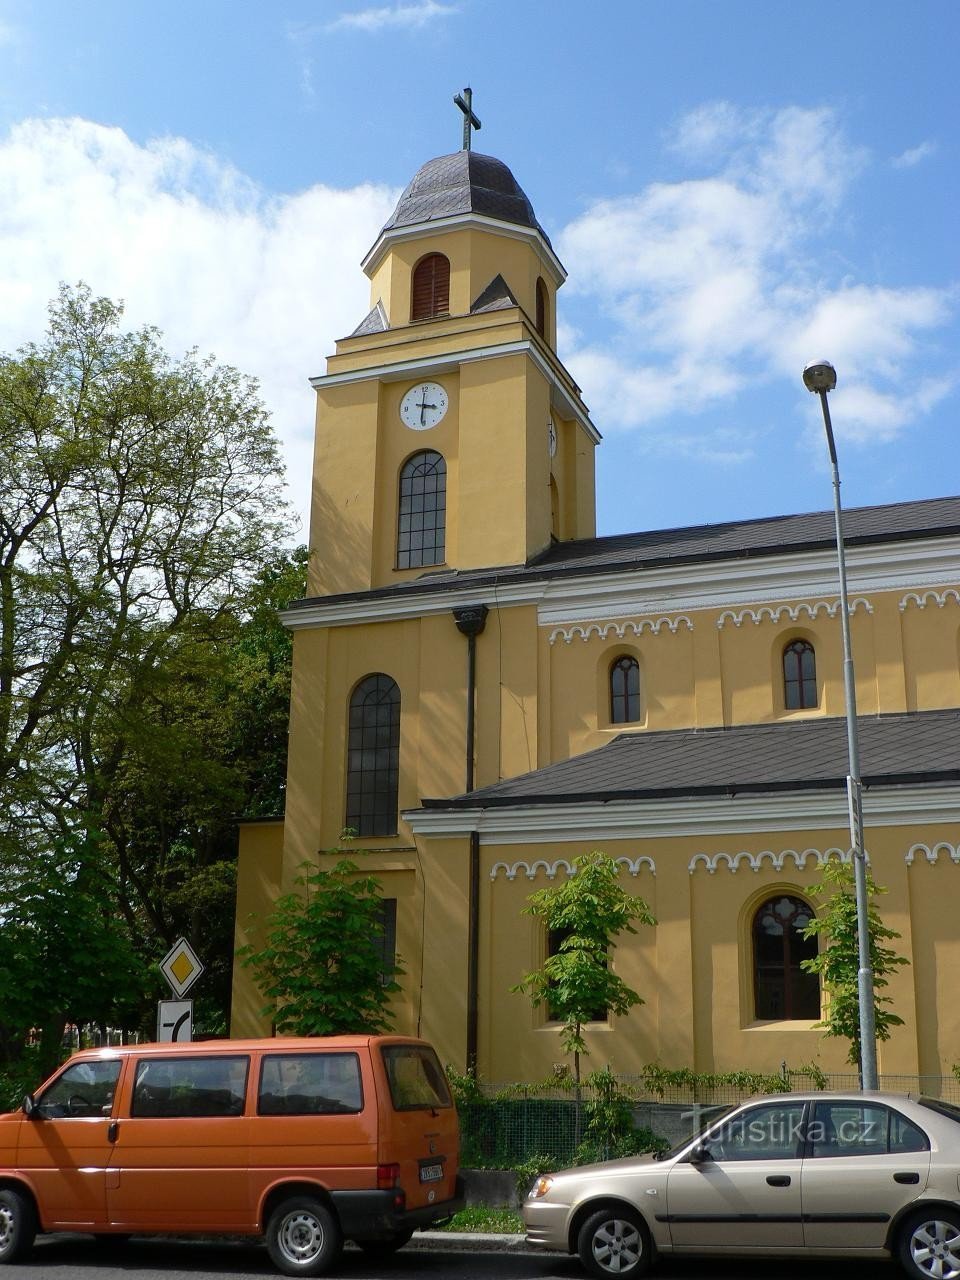 La tour de l'église St. Pierre et Paul